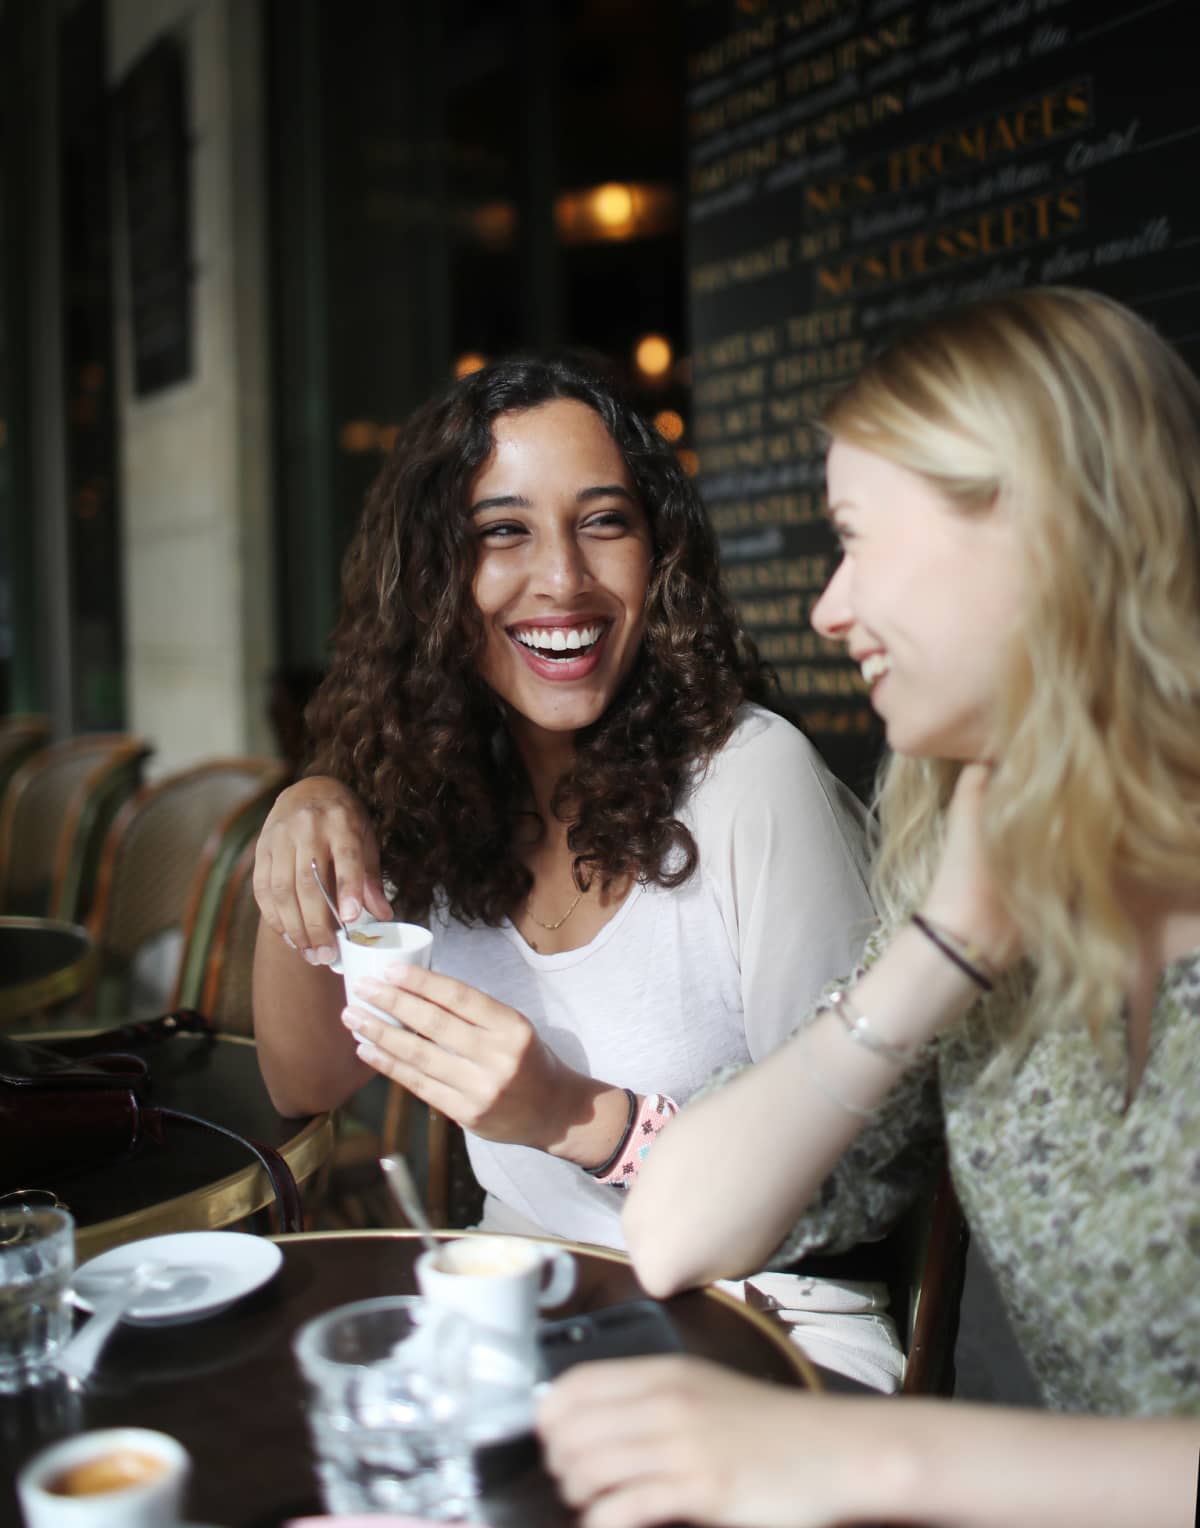 Two smiling women enjoying cups of coffee